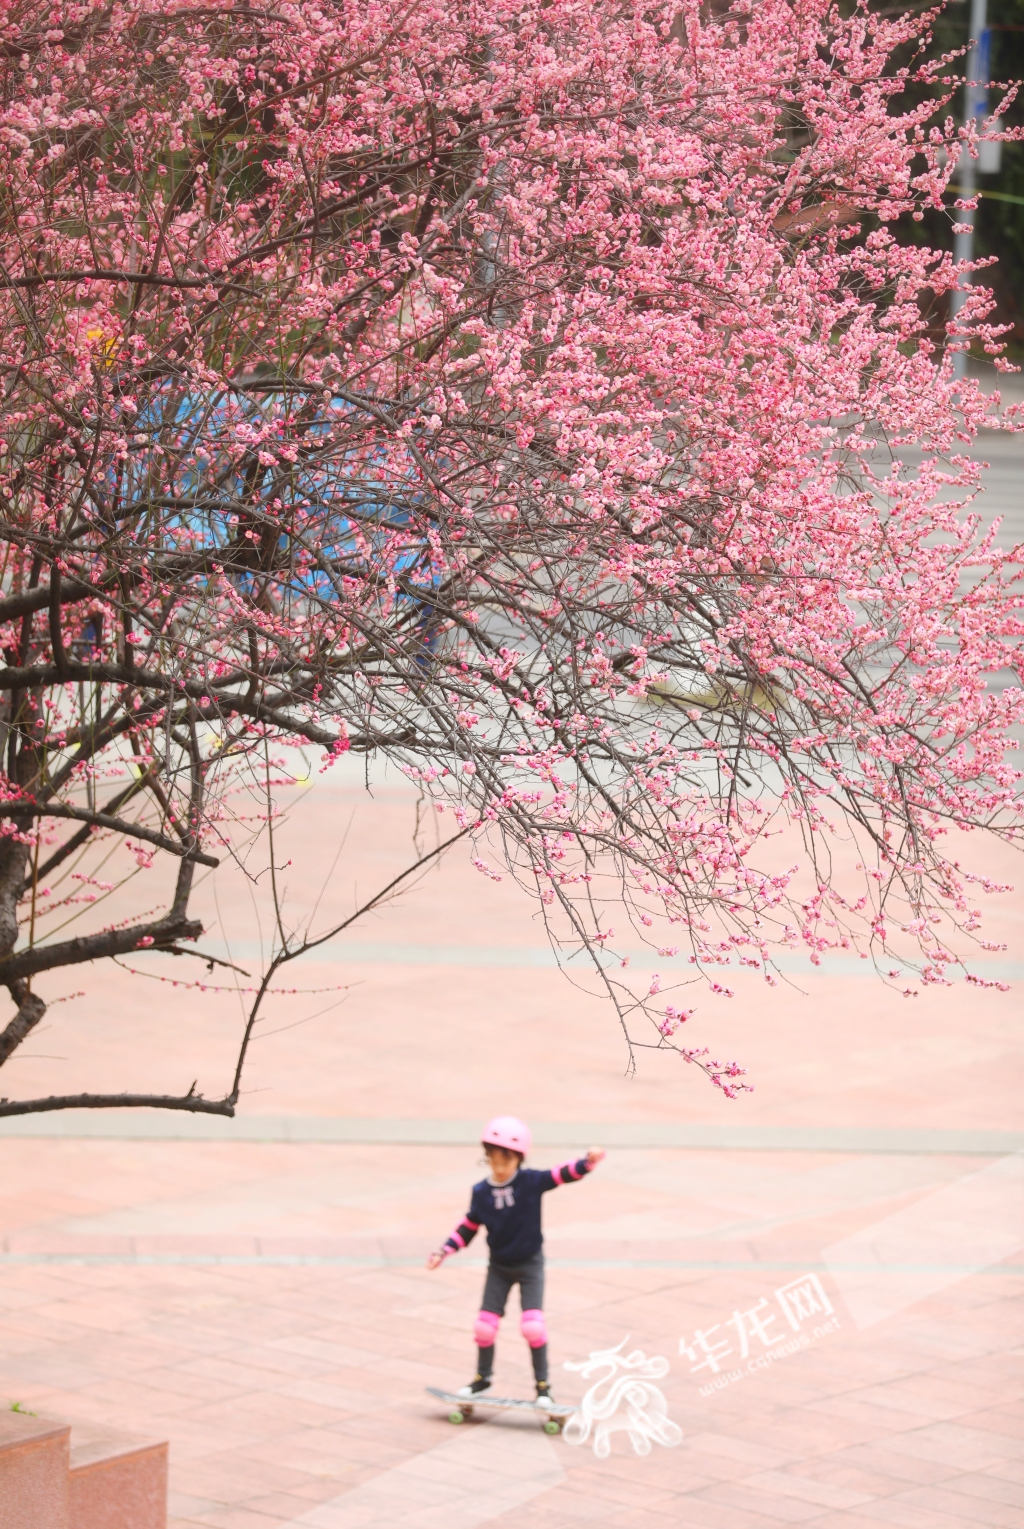 一位小女孩在盛开的红梅树下练习滑板。华龙网-新重庆客户端记者 张质 摄